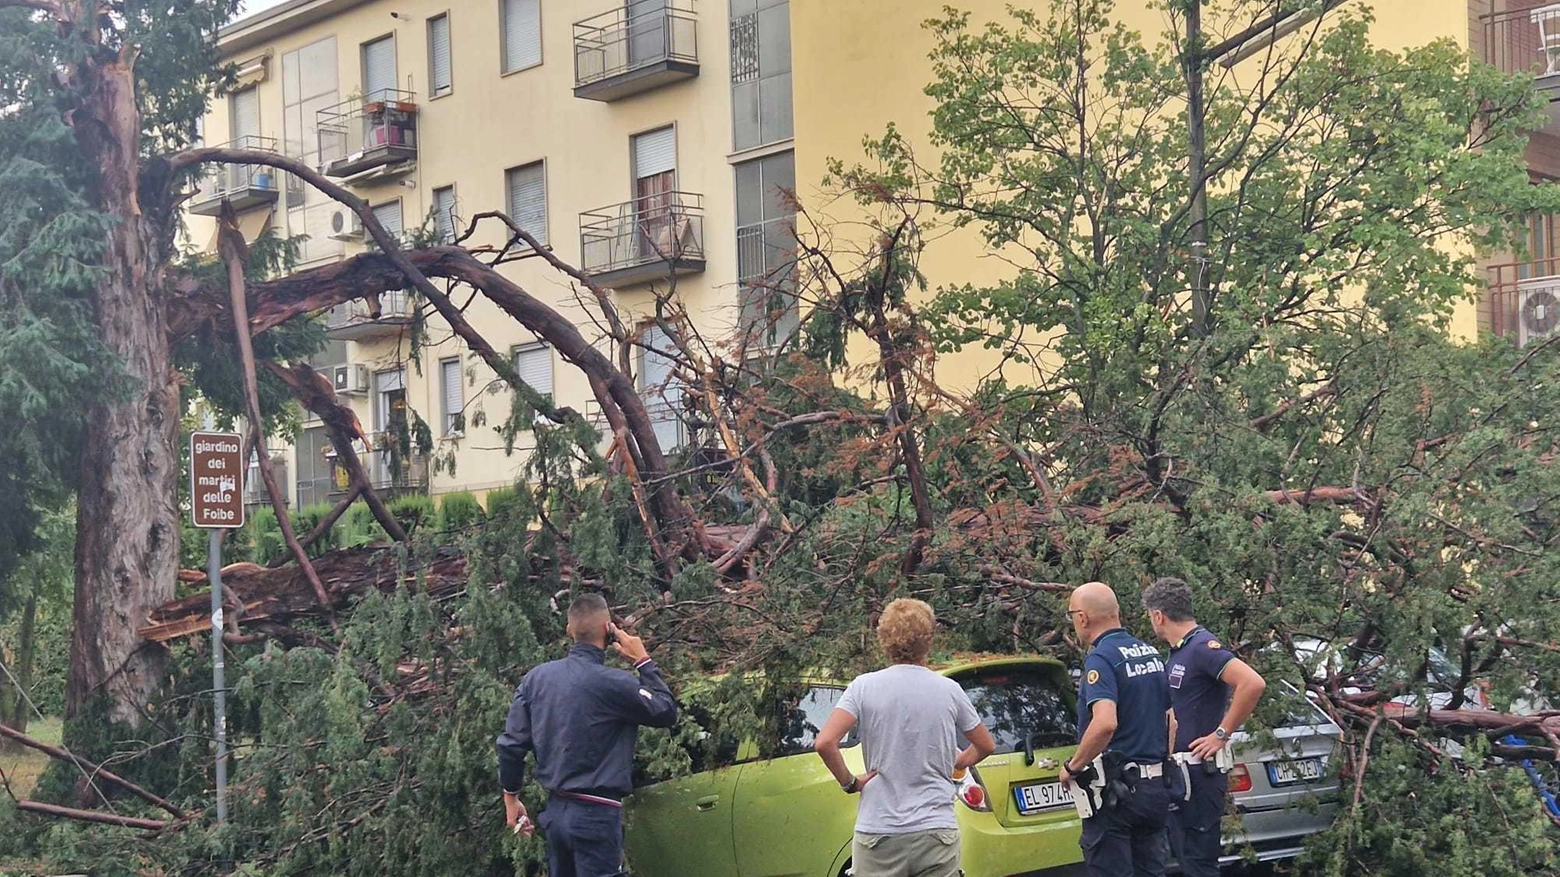 

"Novate Milanese: Prevenzione mancata, cede lo storico tasso e 4 auto vanno distrutte"